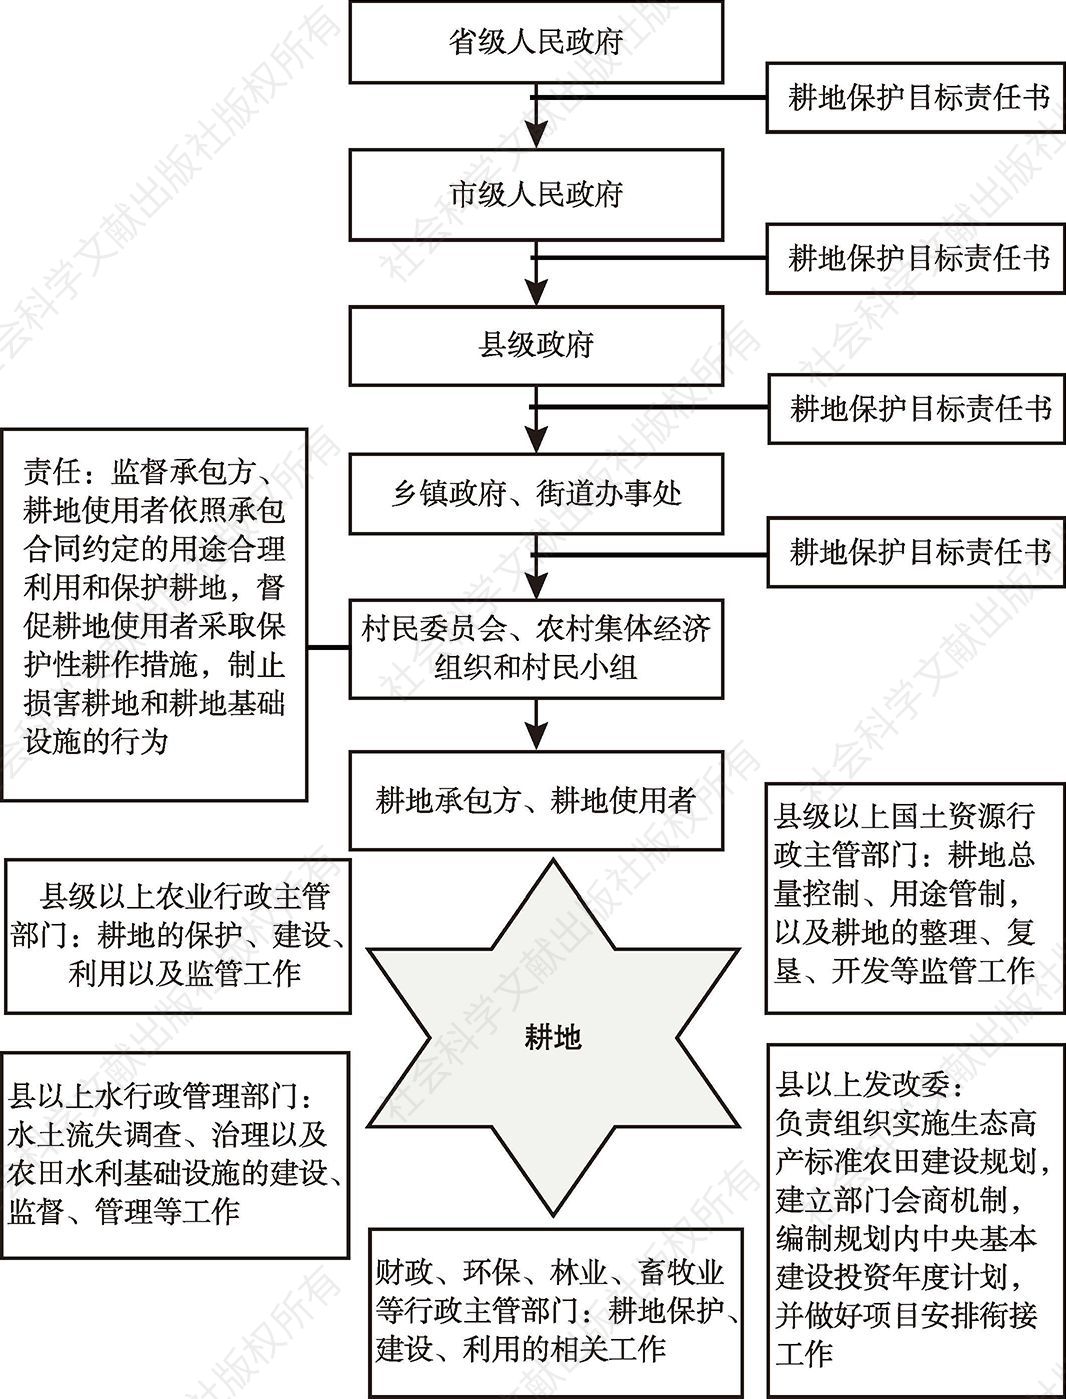 图1 黑龙江省耕地保护管理体系